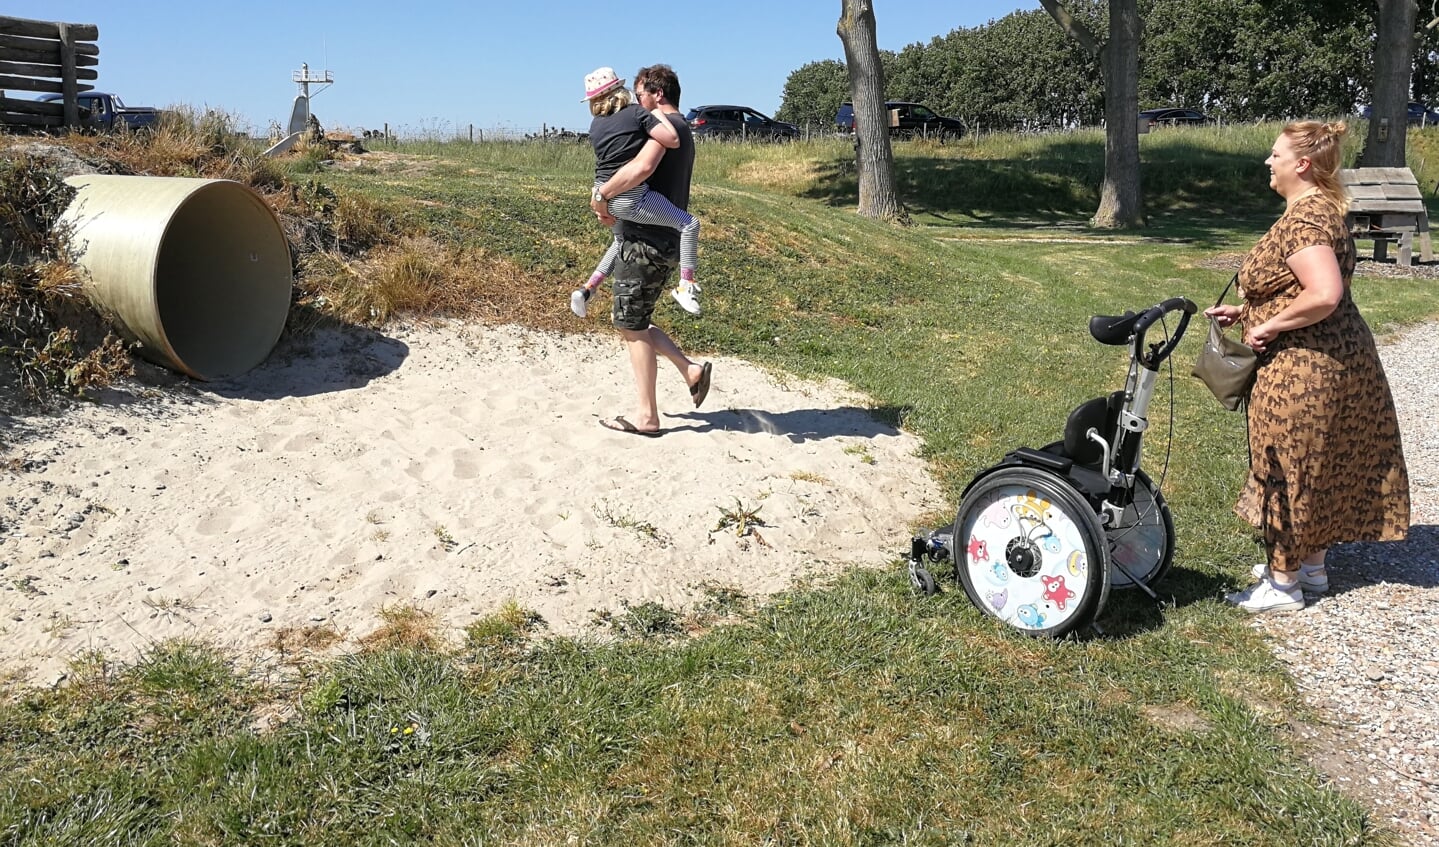 Met de rolstoel kun je overal komen maar zand als valbrekende laag vormt een beperking waar een oplossing voor gaat komen.